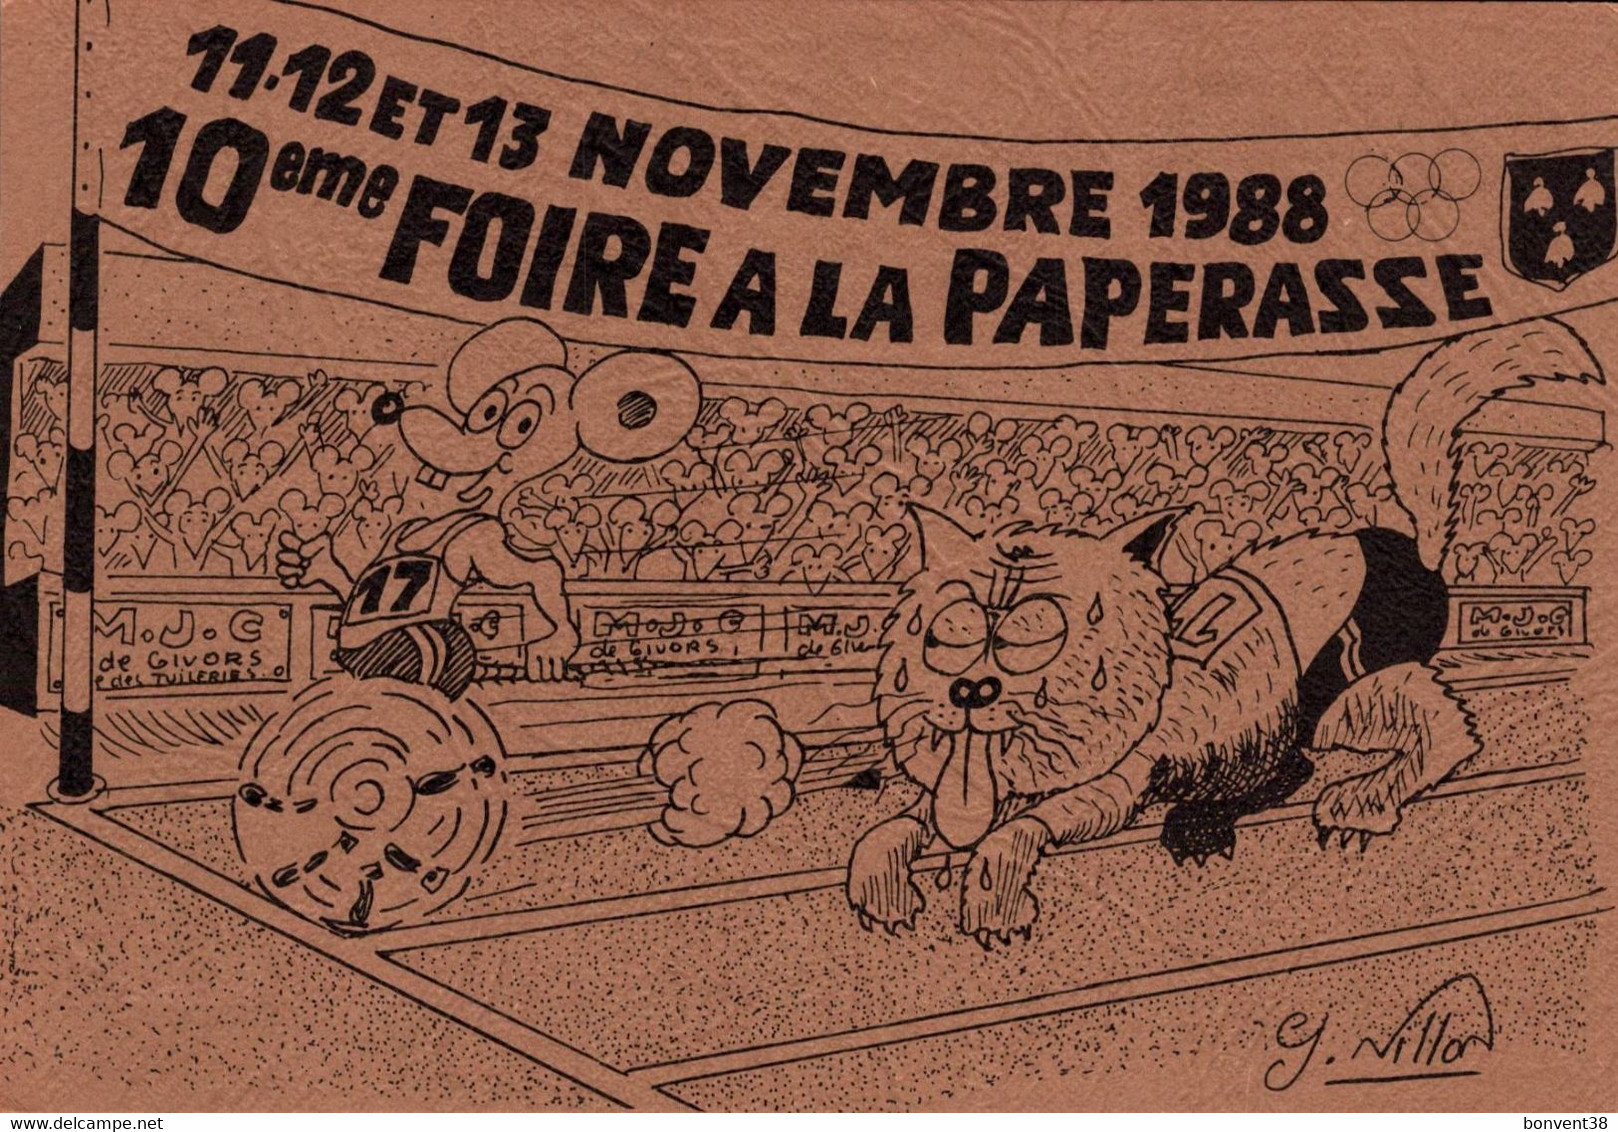 J0903 - 10ème FOIRE à La PAPERASSE - GIVORS 11/12 Et 13 Novembre 1988 - D69 - Illustrateur Georges MILLON - Fairs